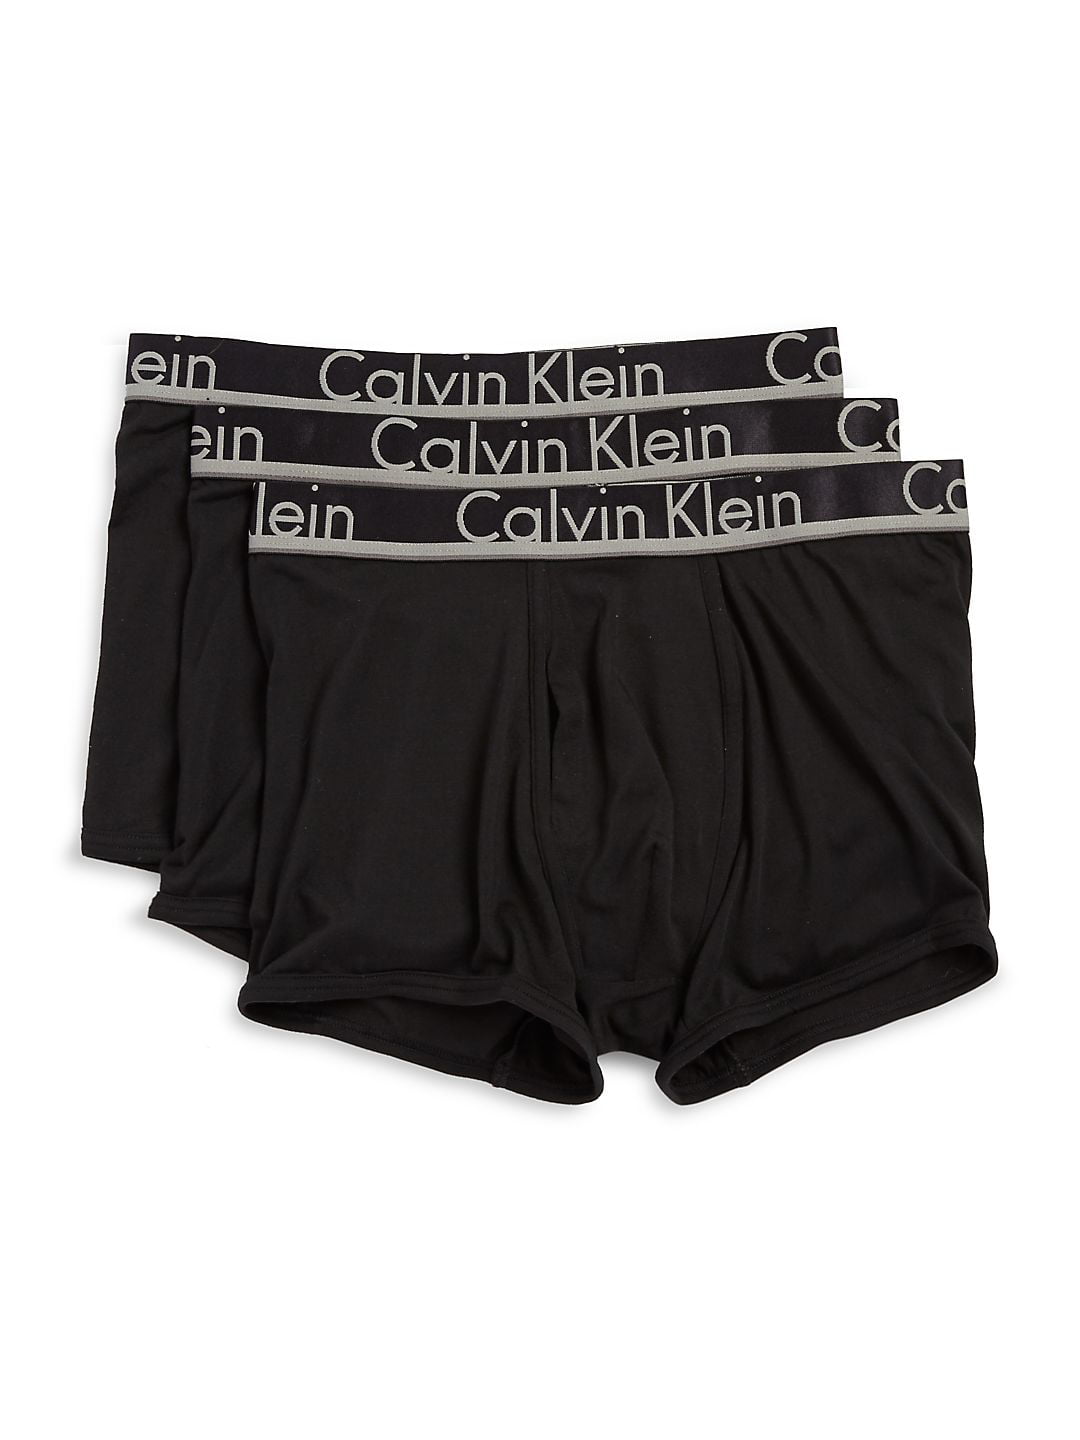 calvin klein boxers very